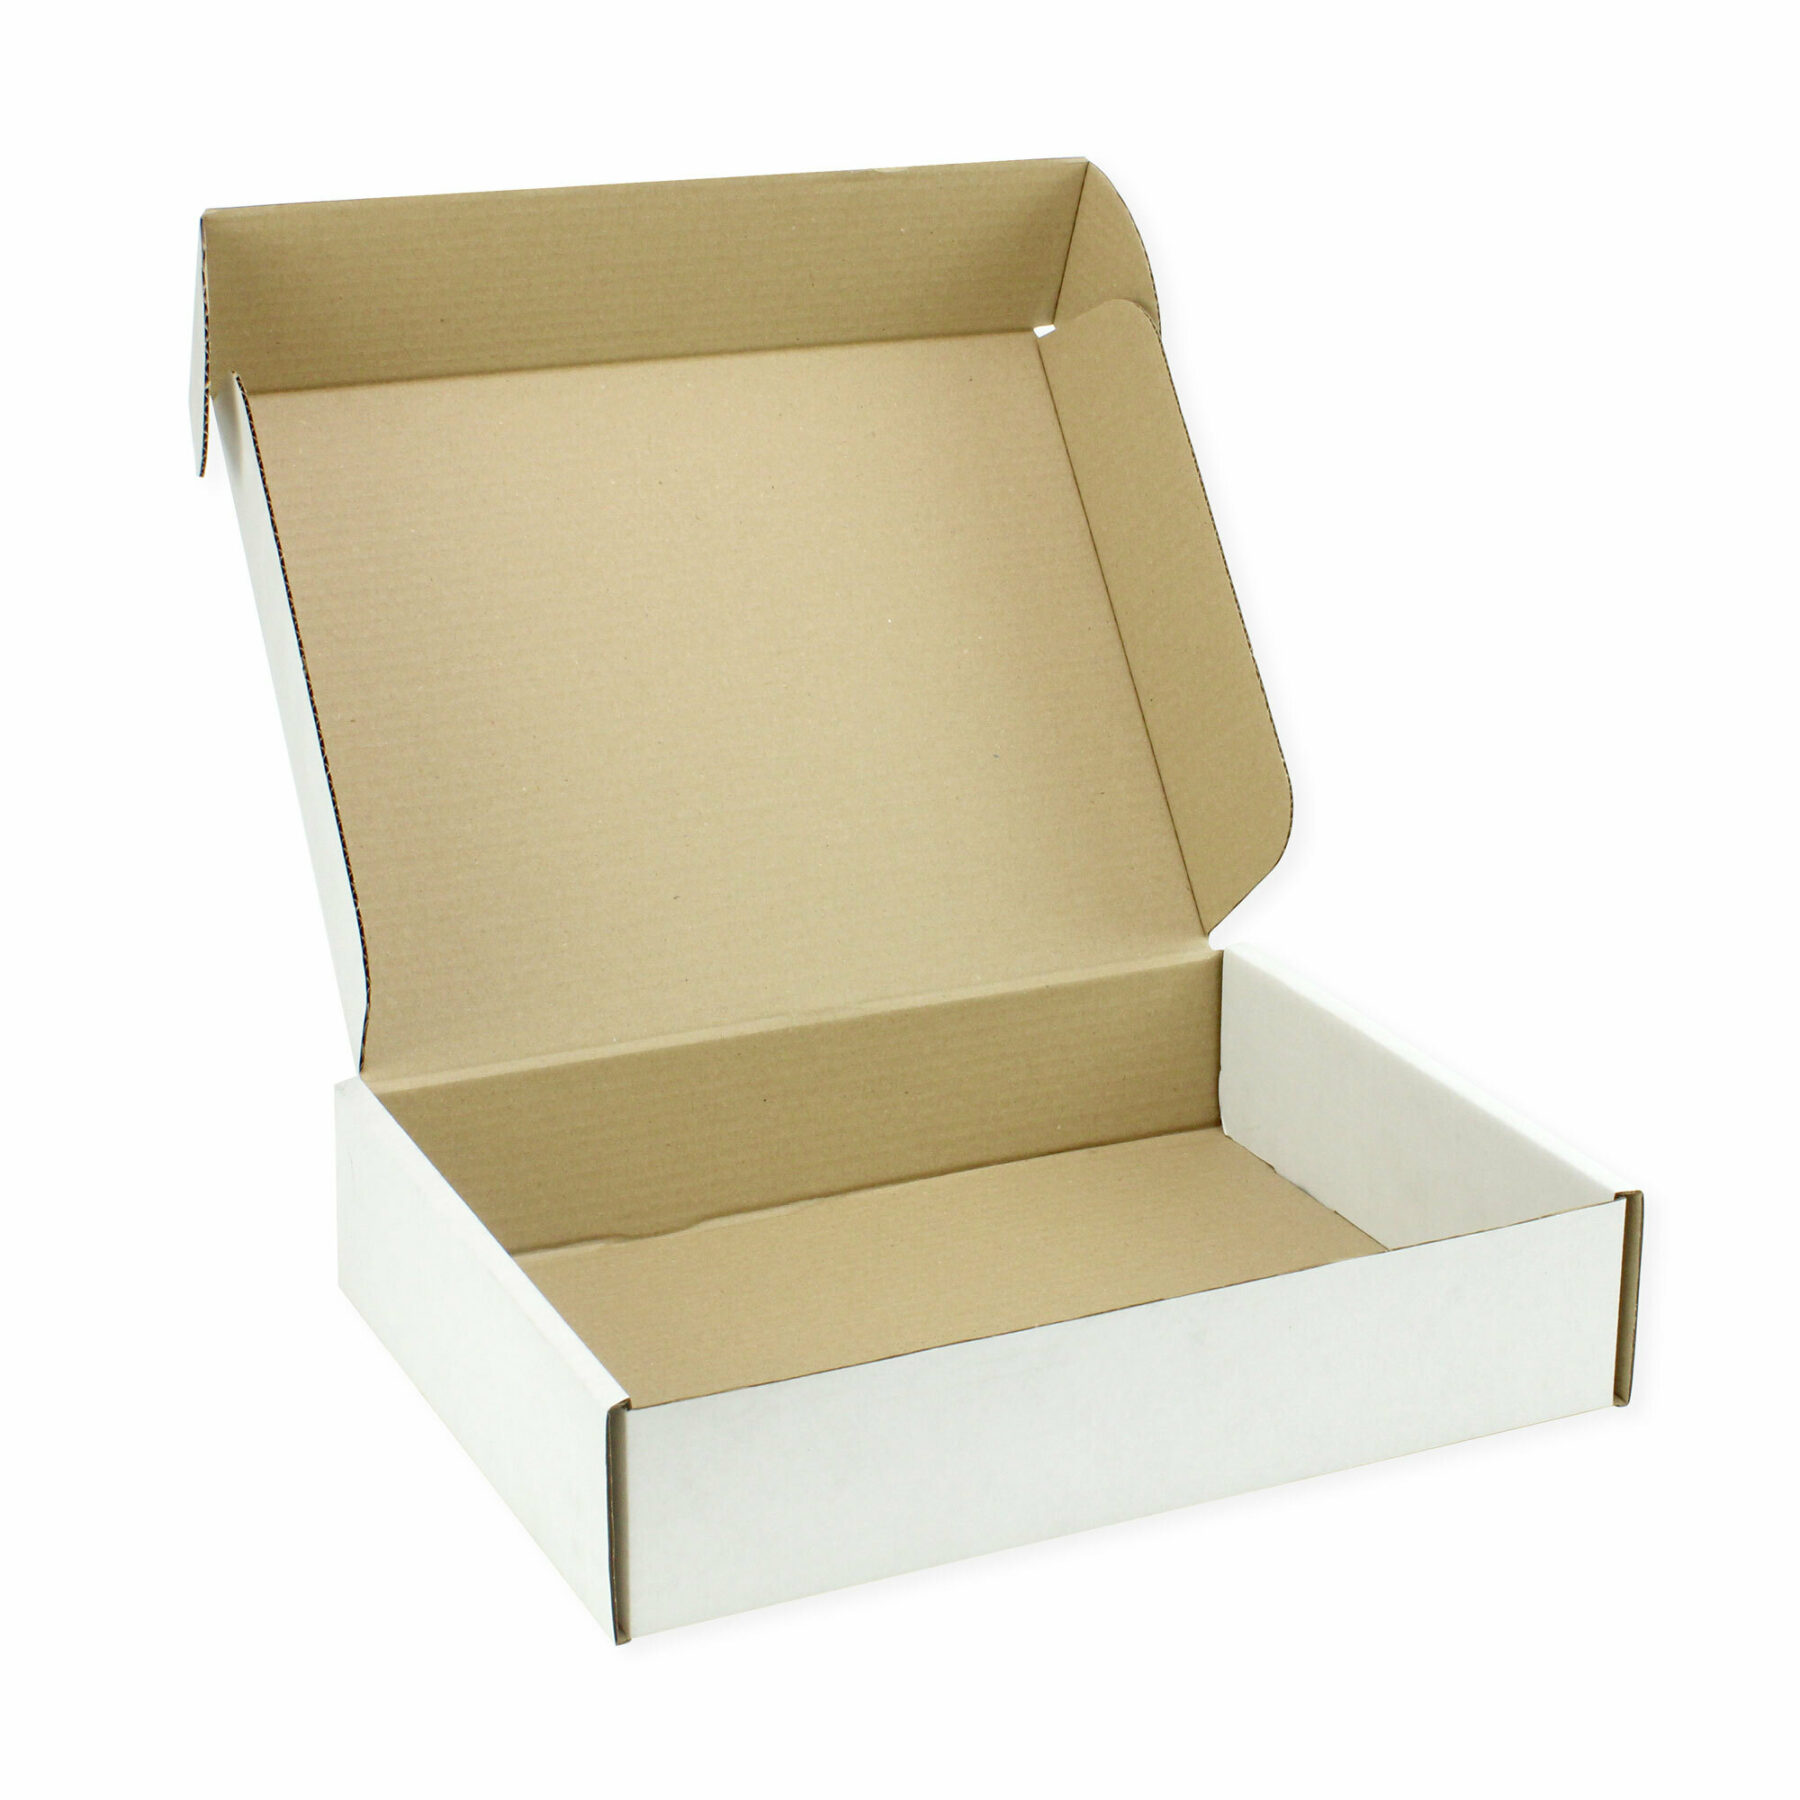 36 x 28 x 8cm Postal Box (10pcs) - open